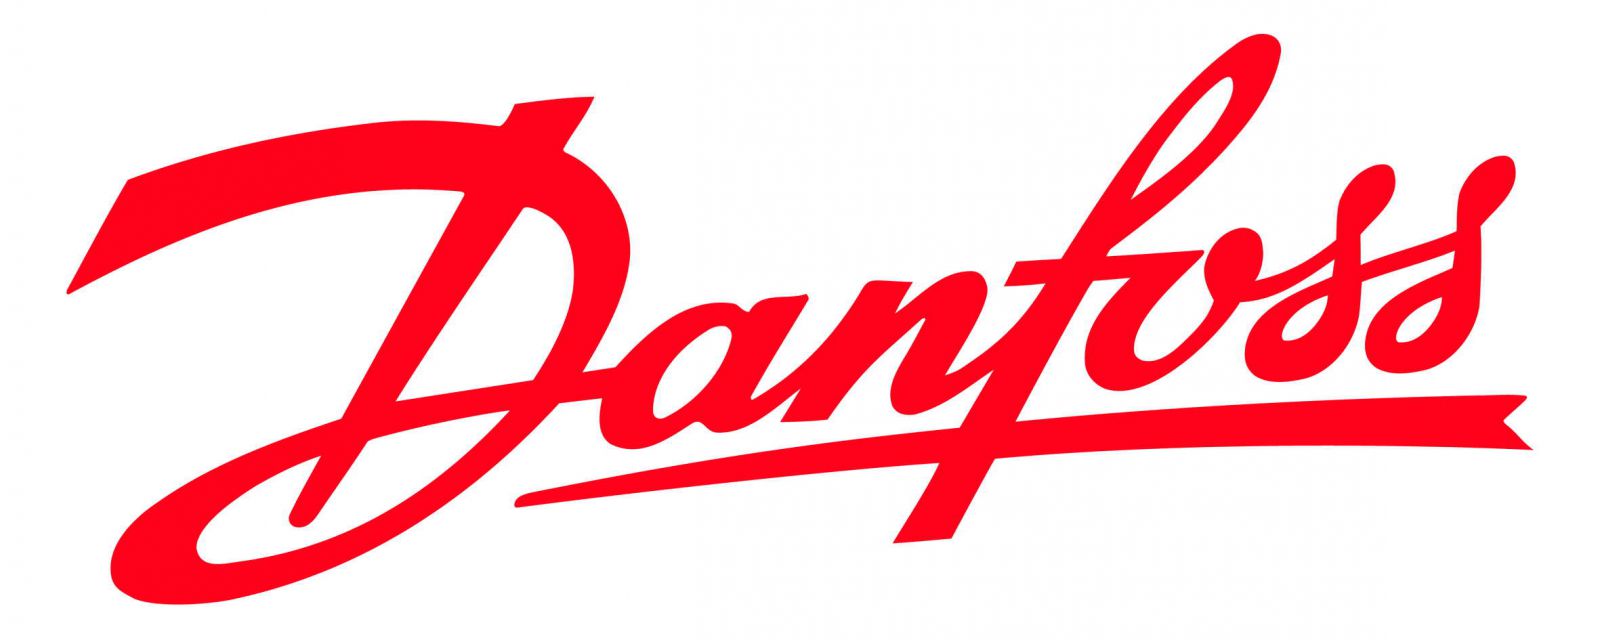 Danfoss-Red-Logo-1